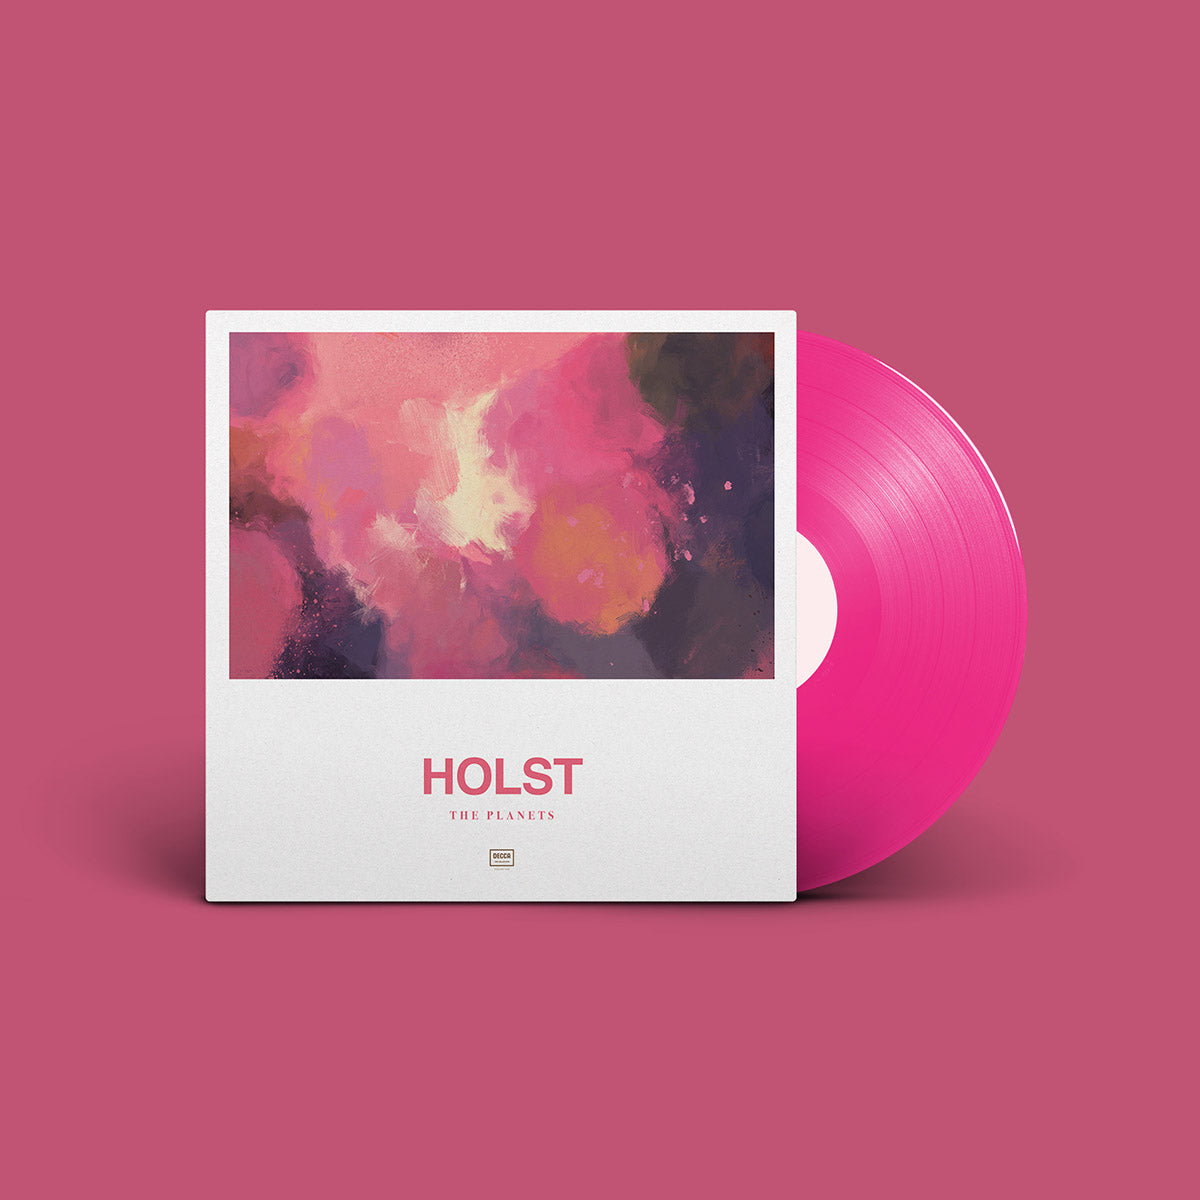 Gustav Holst - Holst - The Planets: Vinyl LP